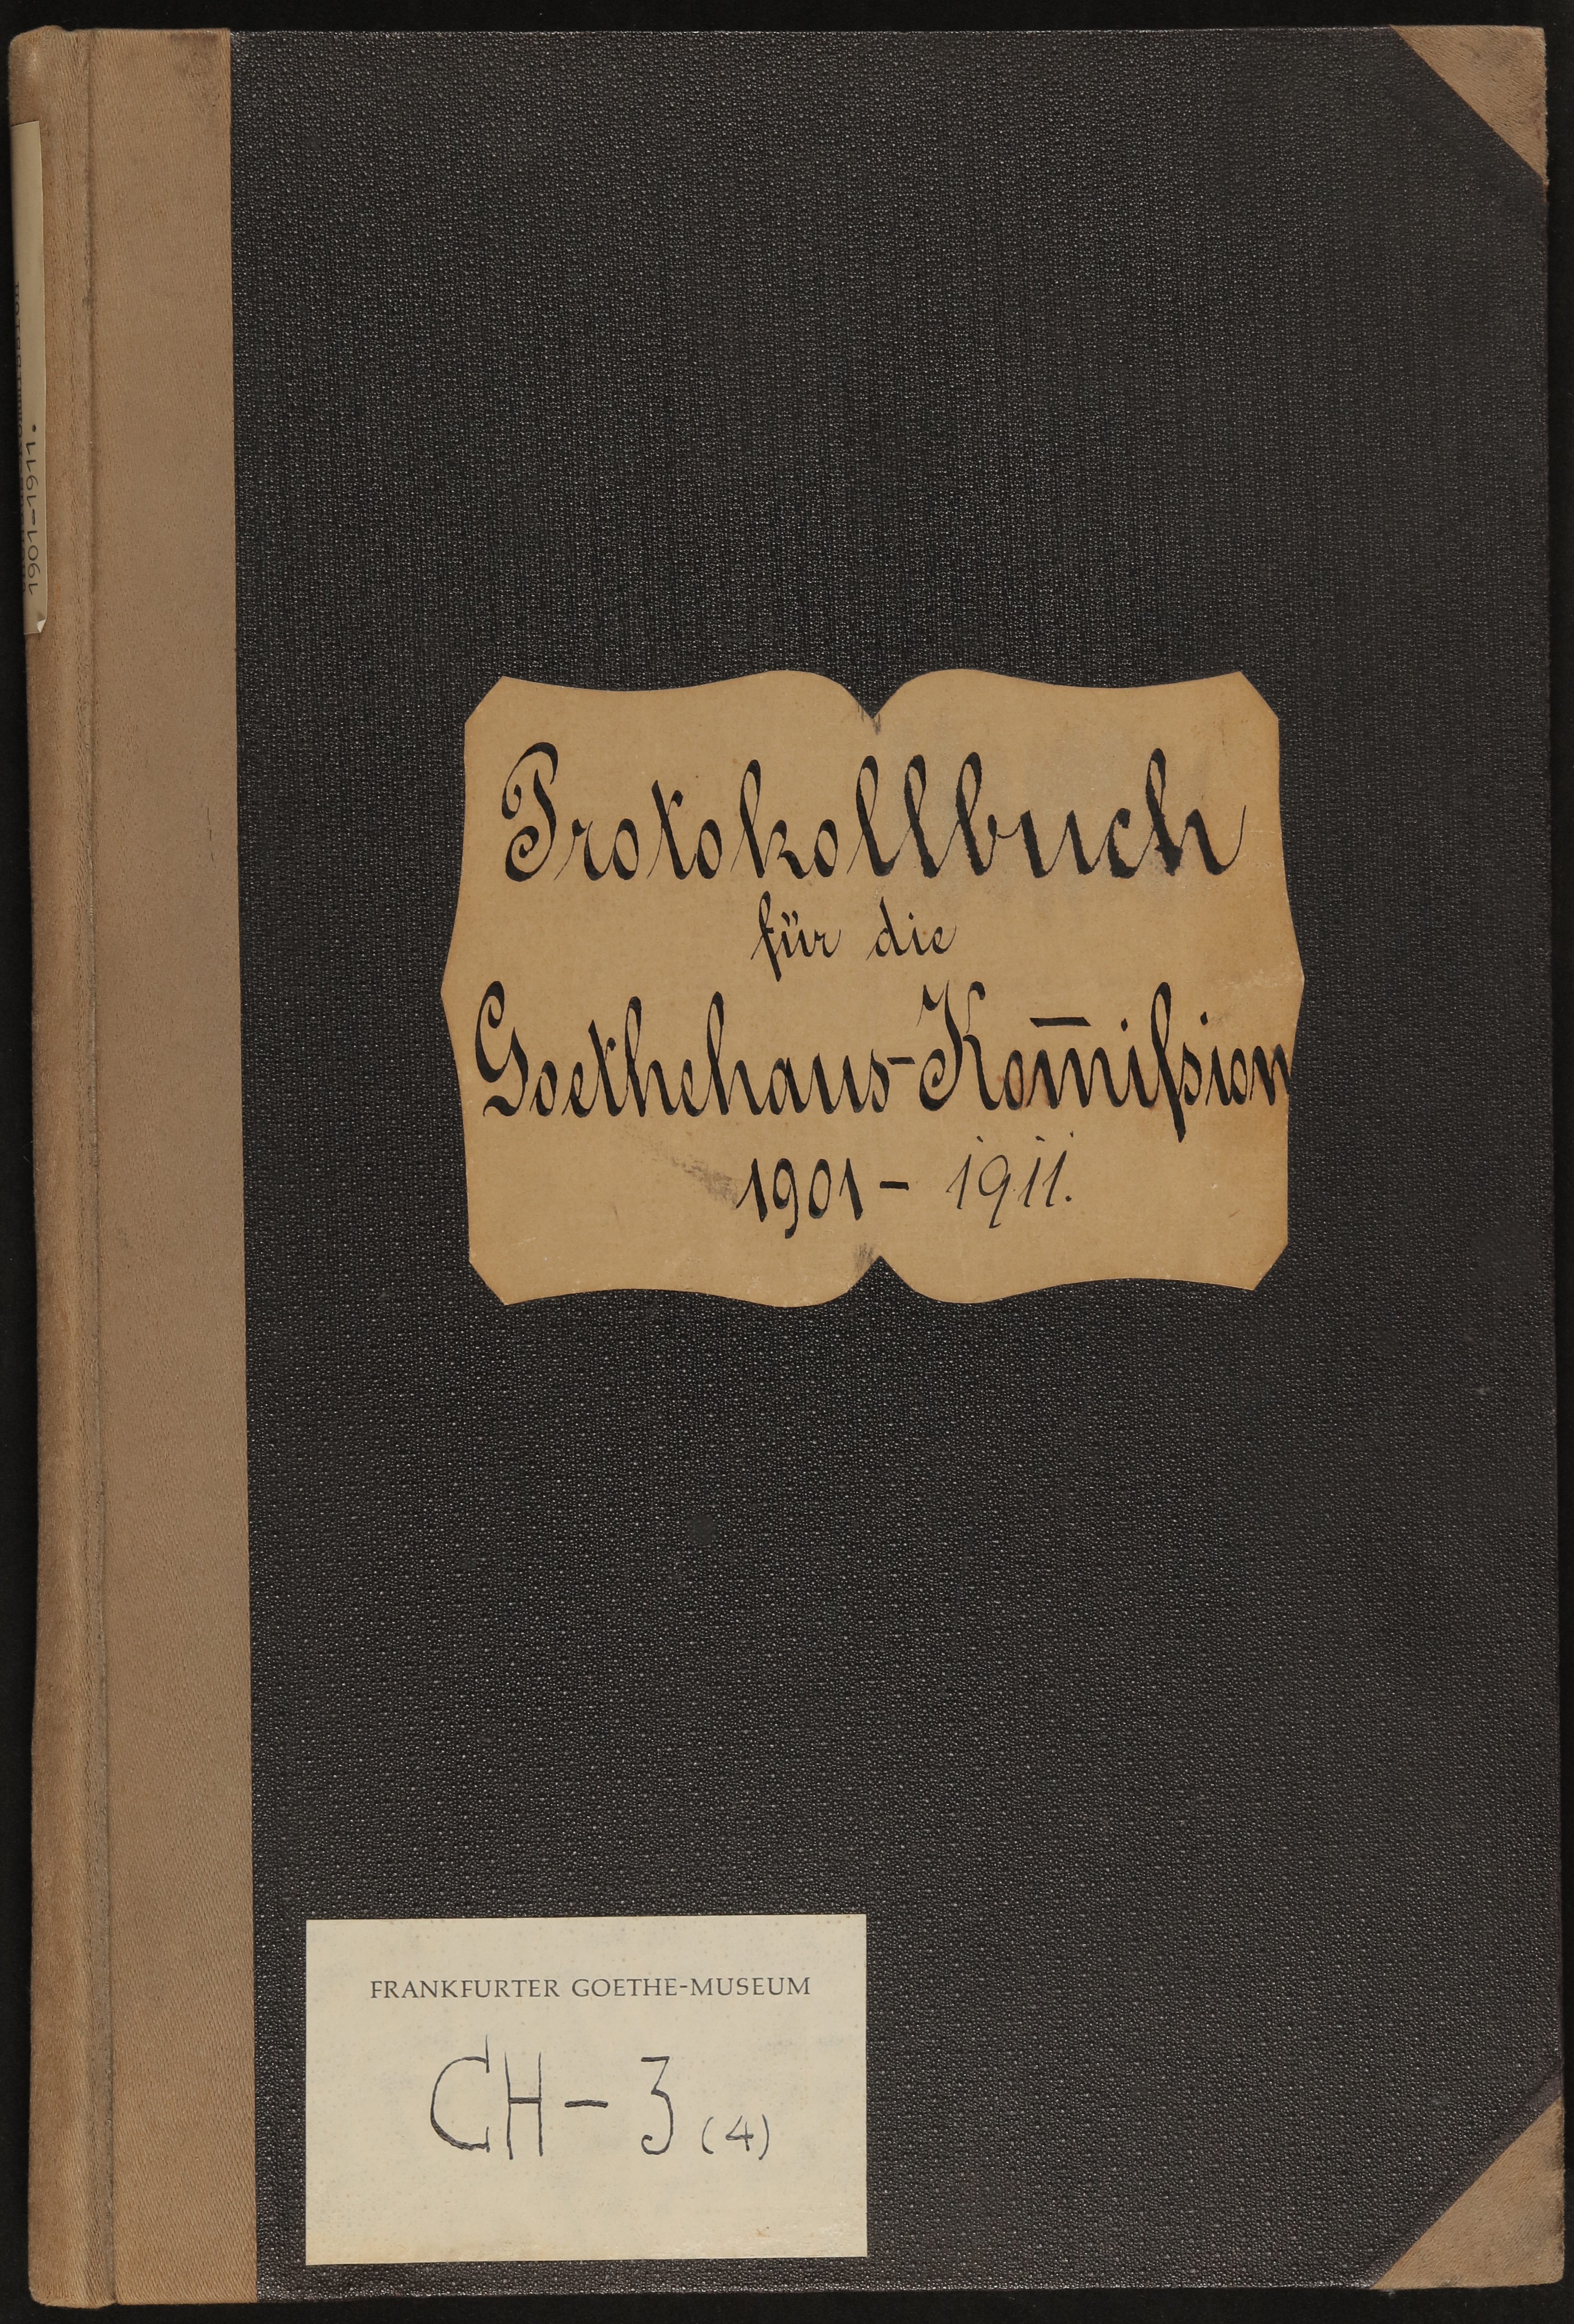 Protokoll-Buch der Goethehaus-Kommission 1901-1911 (Freies Deutsches Hochstift / Frankfurter Goethe-Museum Public Domain Mark)